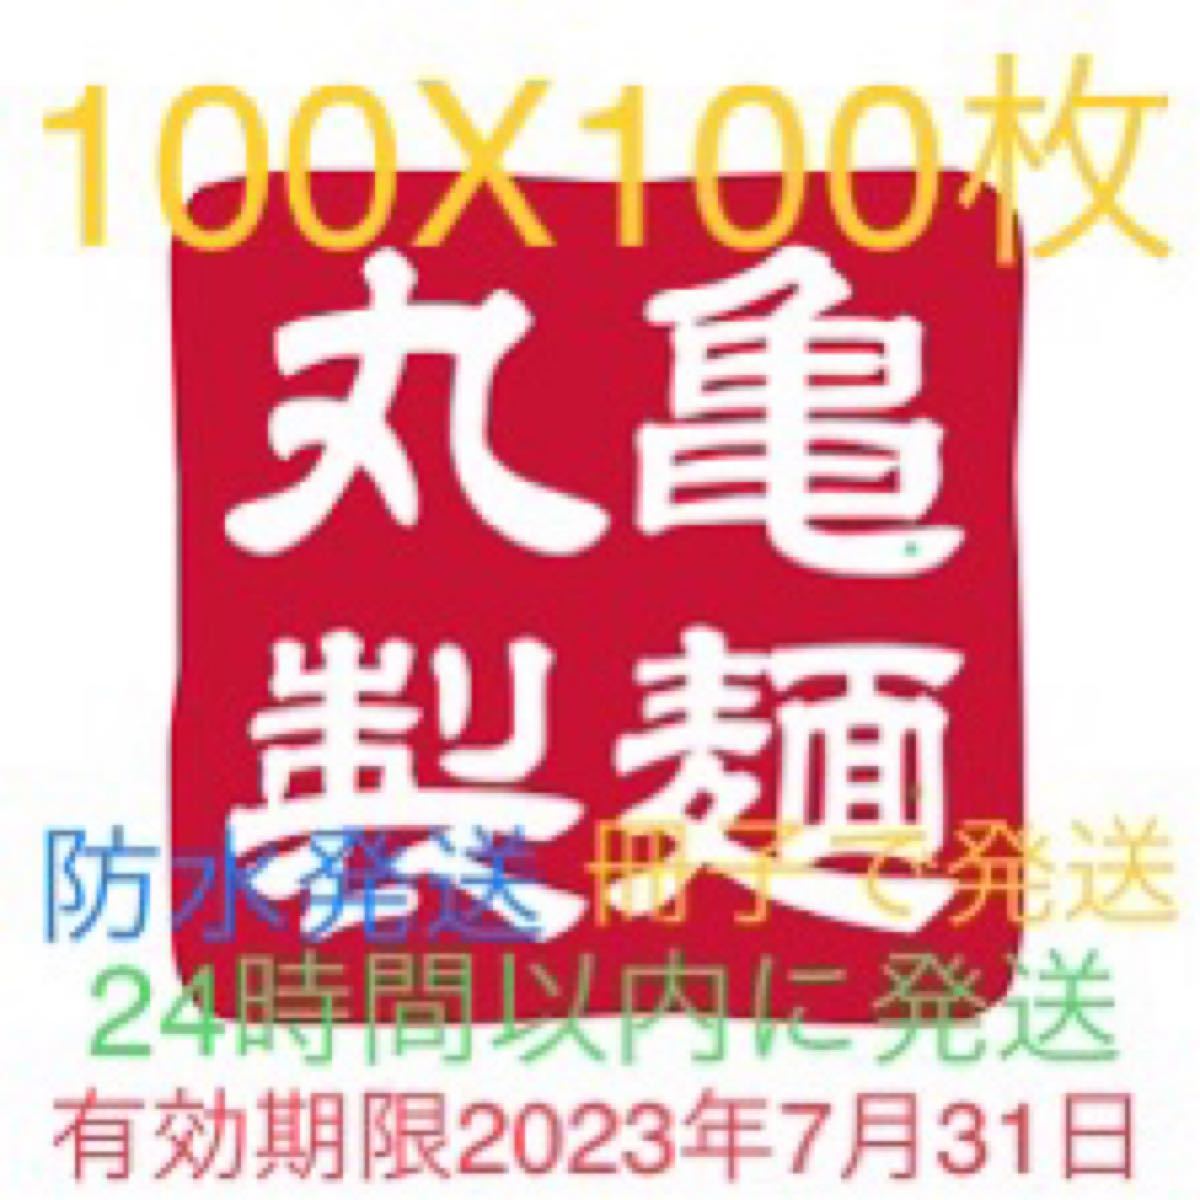 丸亀製麺 トリドール 100X100